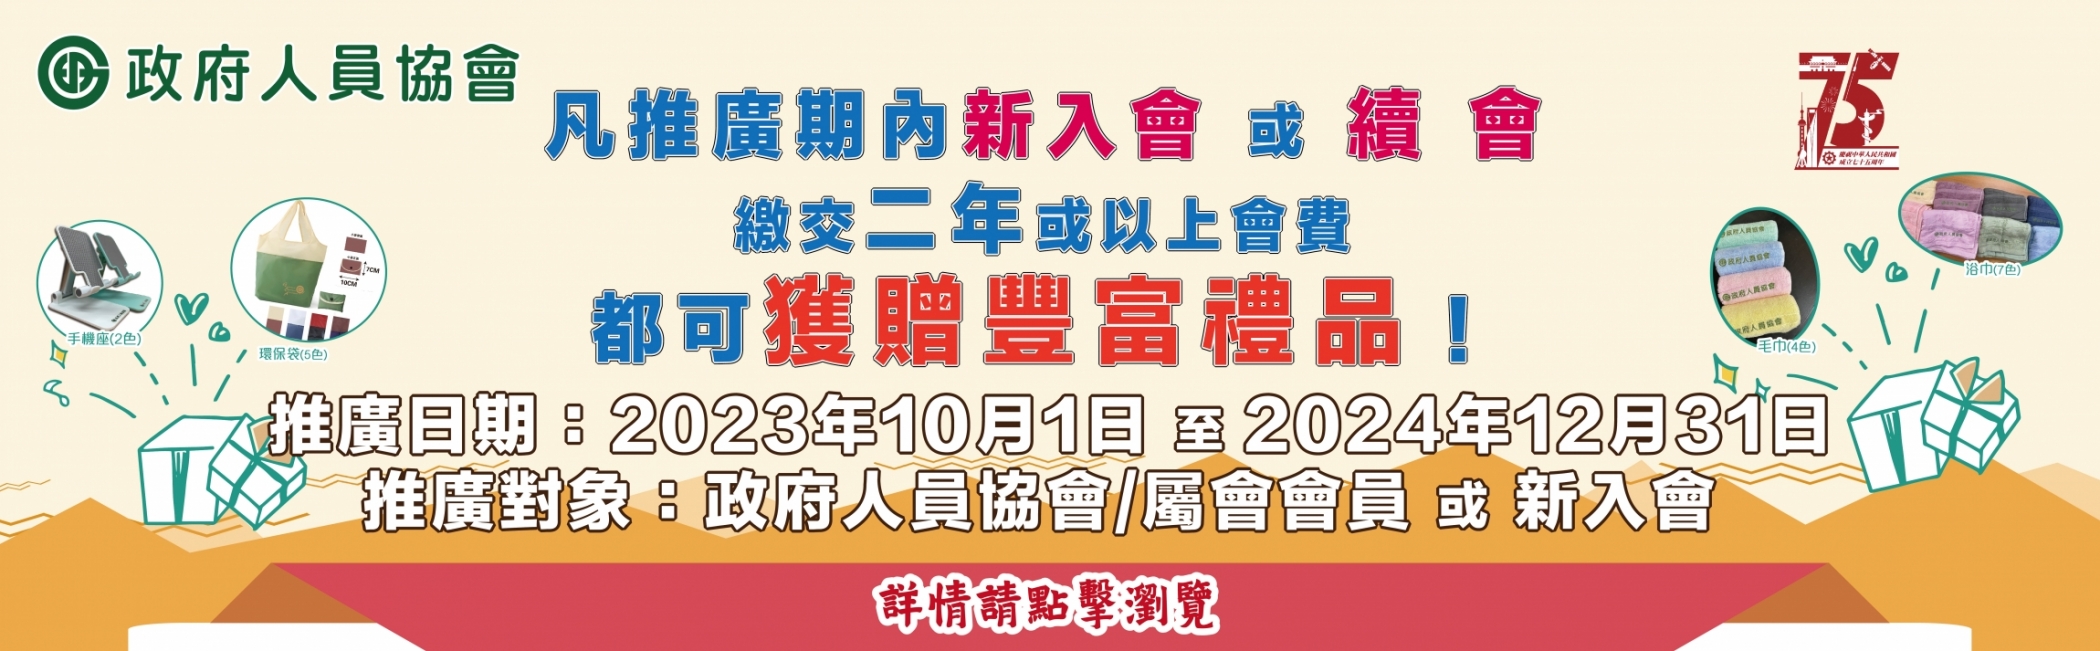 2023會員禮遇_網ai_網站banner